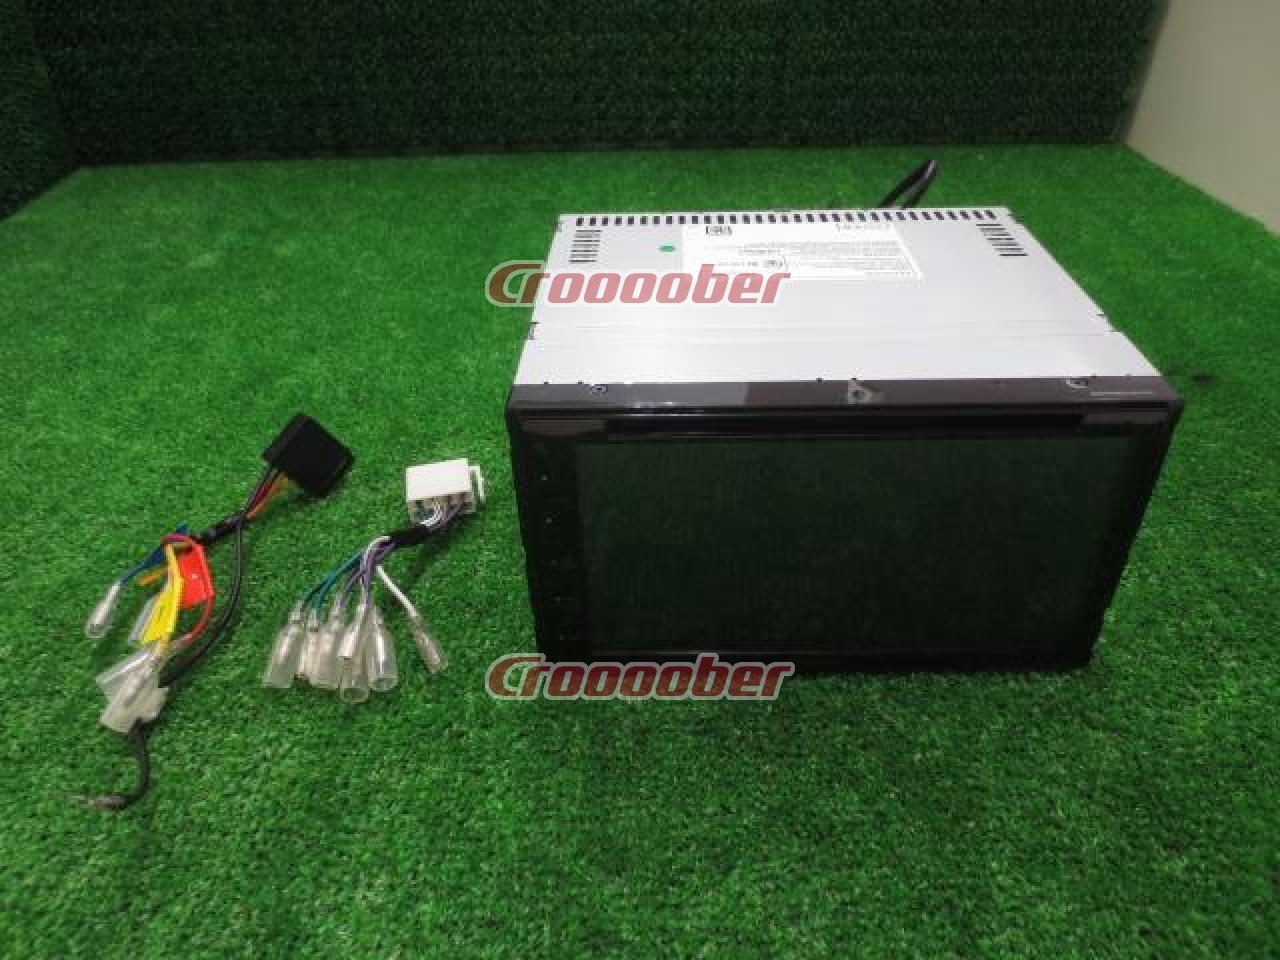 KENWOOD DDX5020S | DVD Tuners(Built in amp) | Croooober